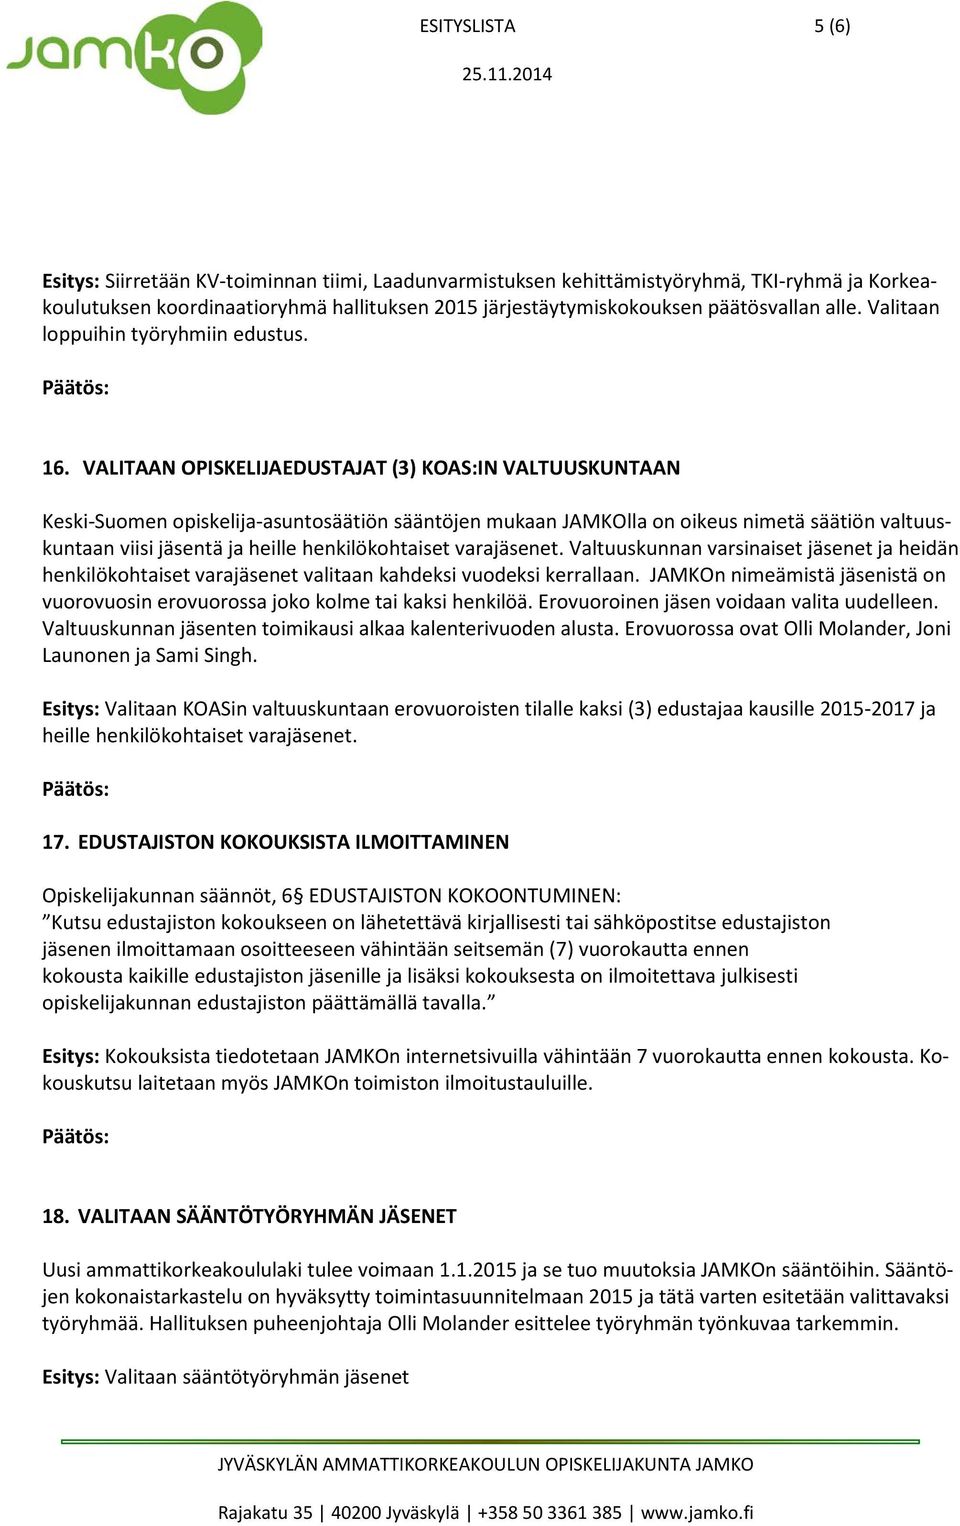 VALITAAN OPISKELIJAEDUSTAJAT (3) KOAS:IN VALTUUSKUNTAAN Keski-Suomen opiskelija-asuntosäätiön sääntöjen mukaan JAMKOlla on oikeus nimetä säätiön valtuuskuntaan viisi jäsentä ja heille